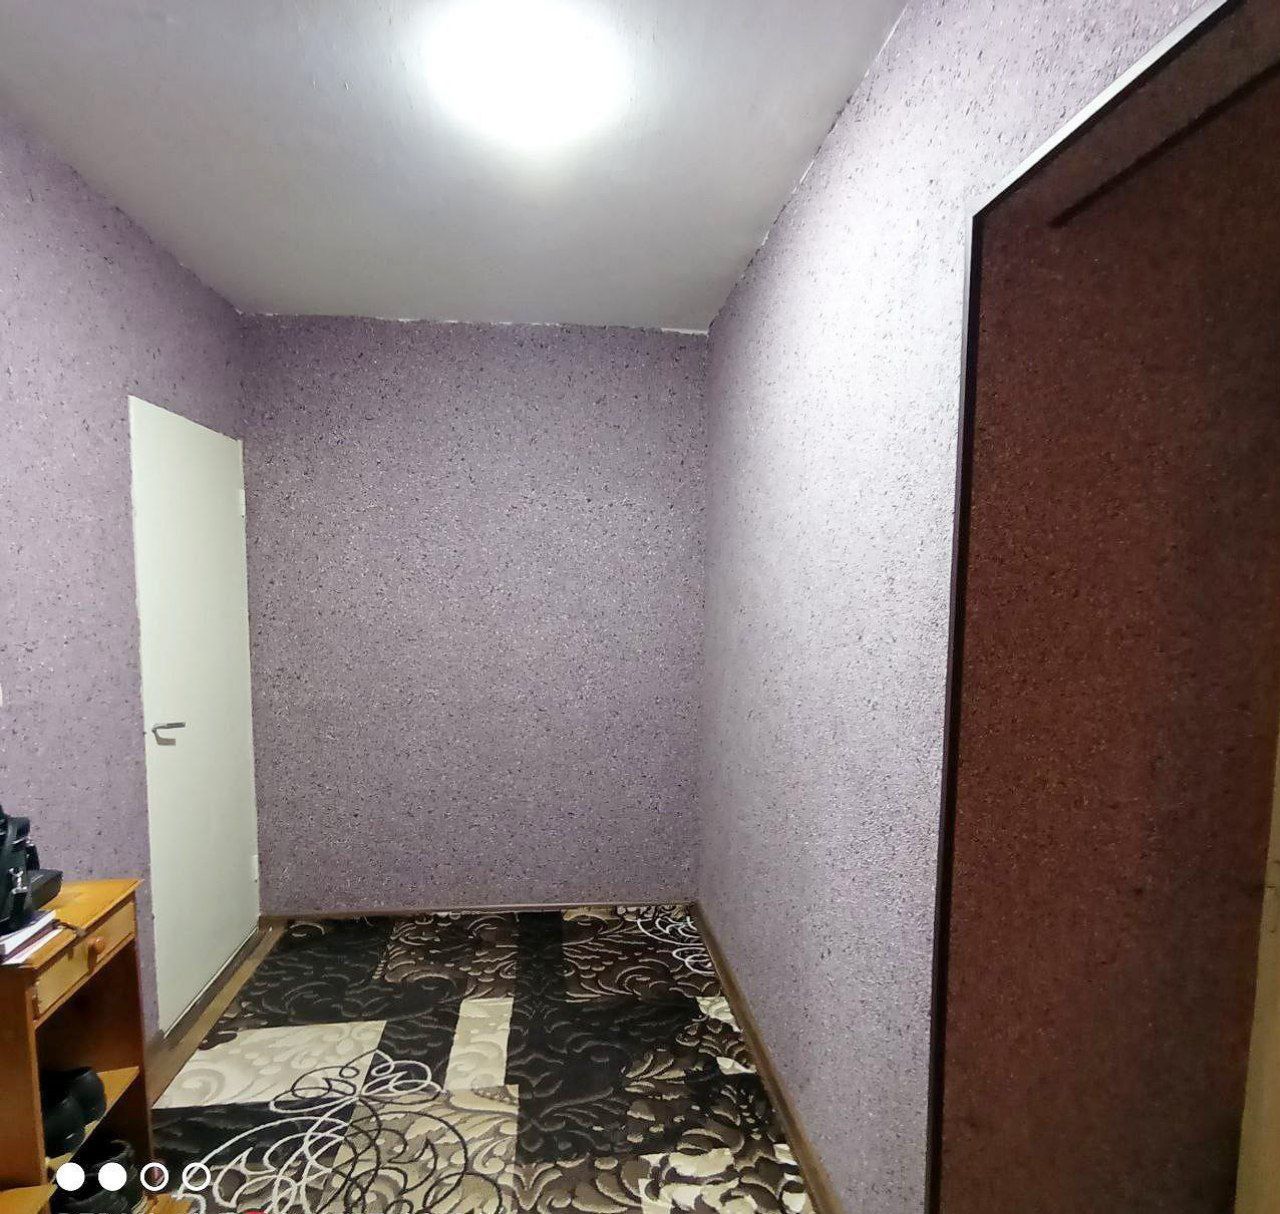 Продается 2 комнатная квартира в Югославском доме СамКочАвто